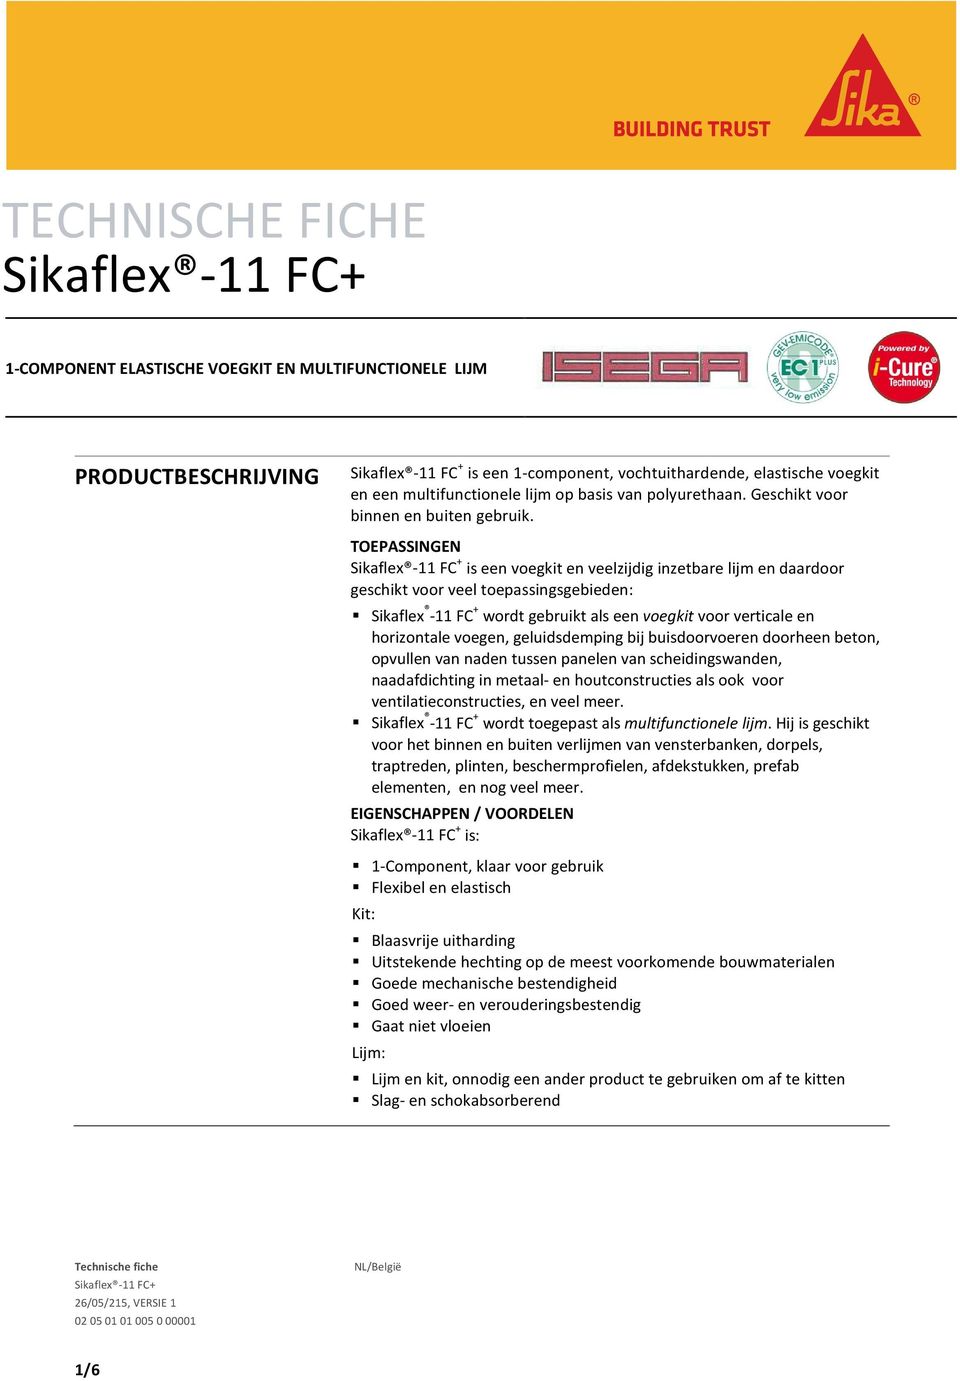 TOEPASSINGEN Sikaflex -11 FC + is een voegkit en veelzijdig inzetbare lijm en daardoor geschikt voor veel toepassingsgebieden: Sikaflex -11 FC + wordt gebruikt als een voegkit voor verticale en